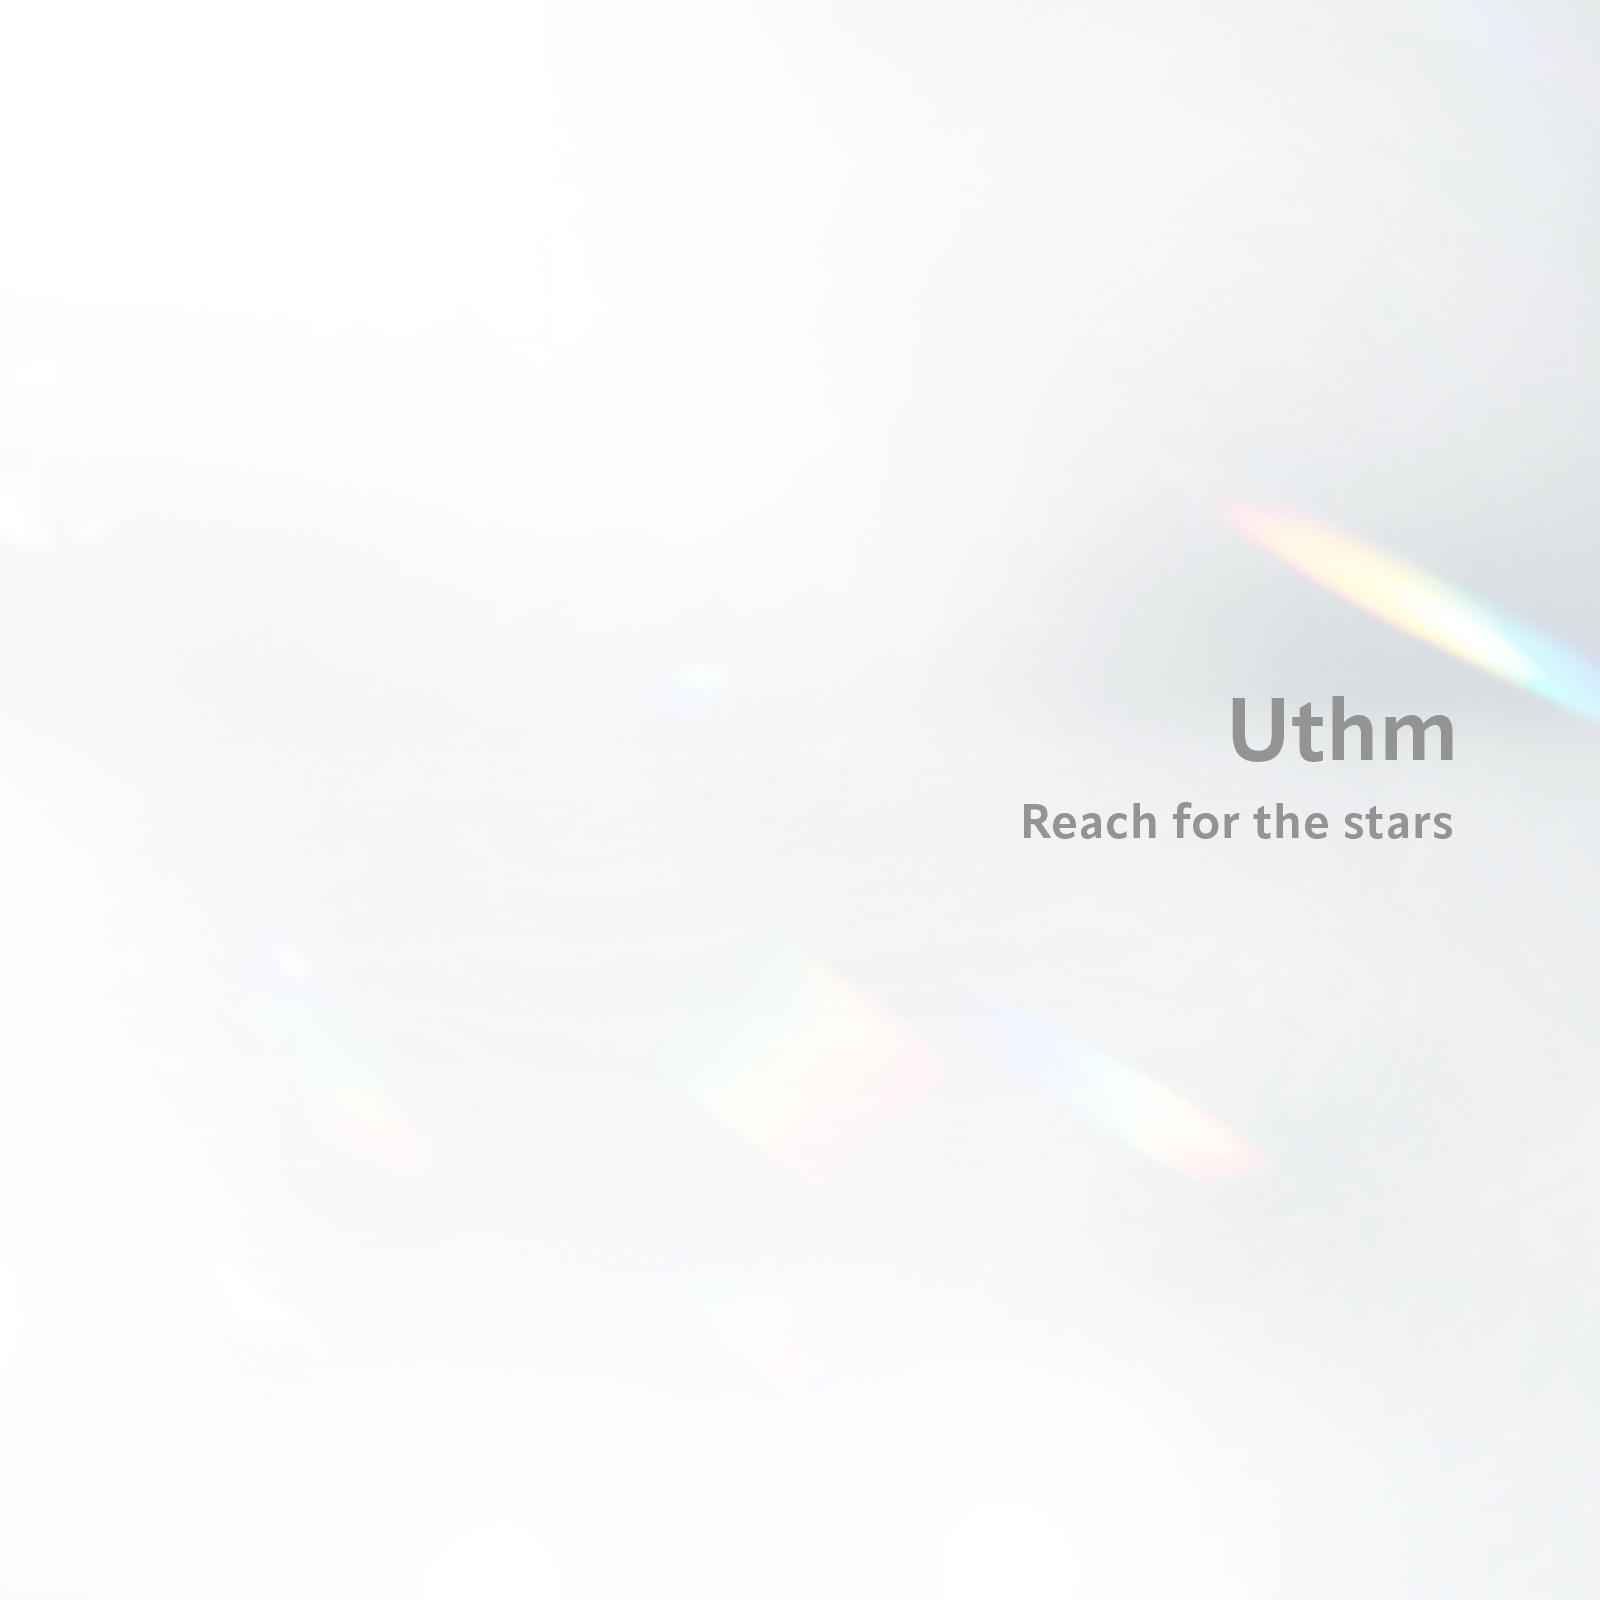 「歌姫ファイトクラブ!!」の合格者による ボーカルユニット、Uthm「Reach for the stars EP」緊急配信